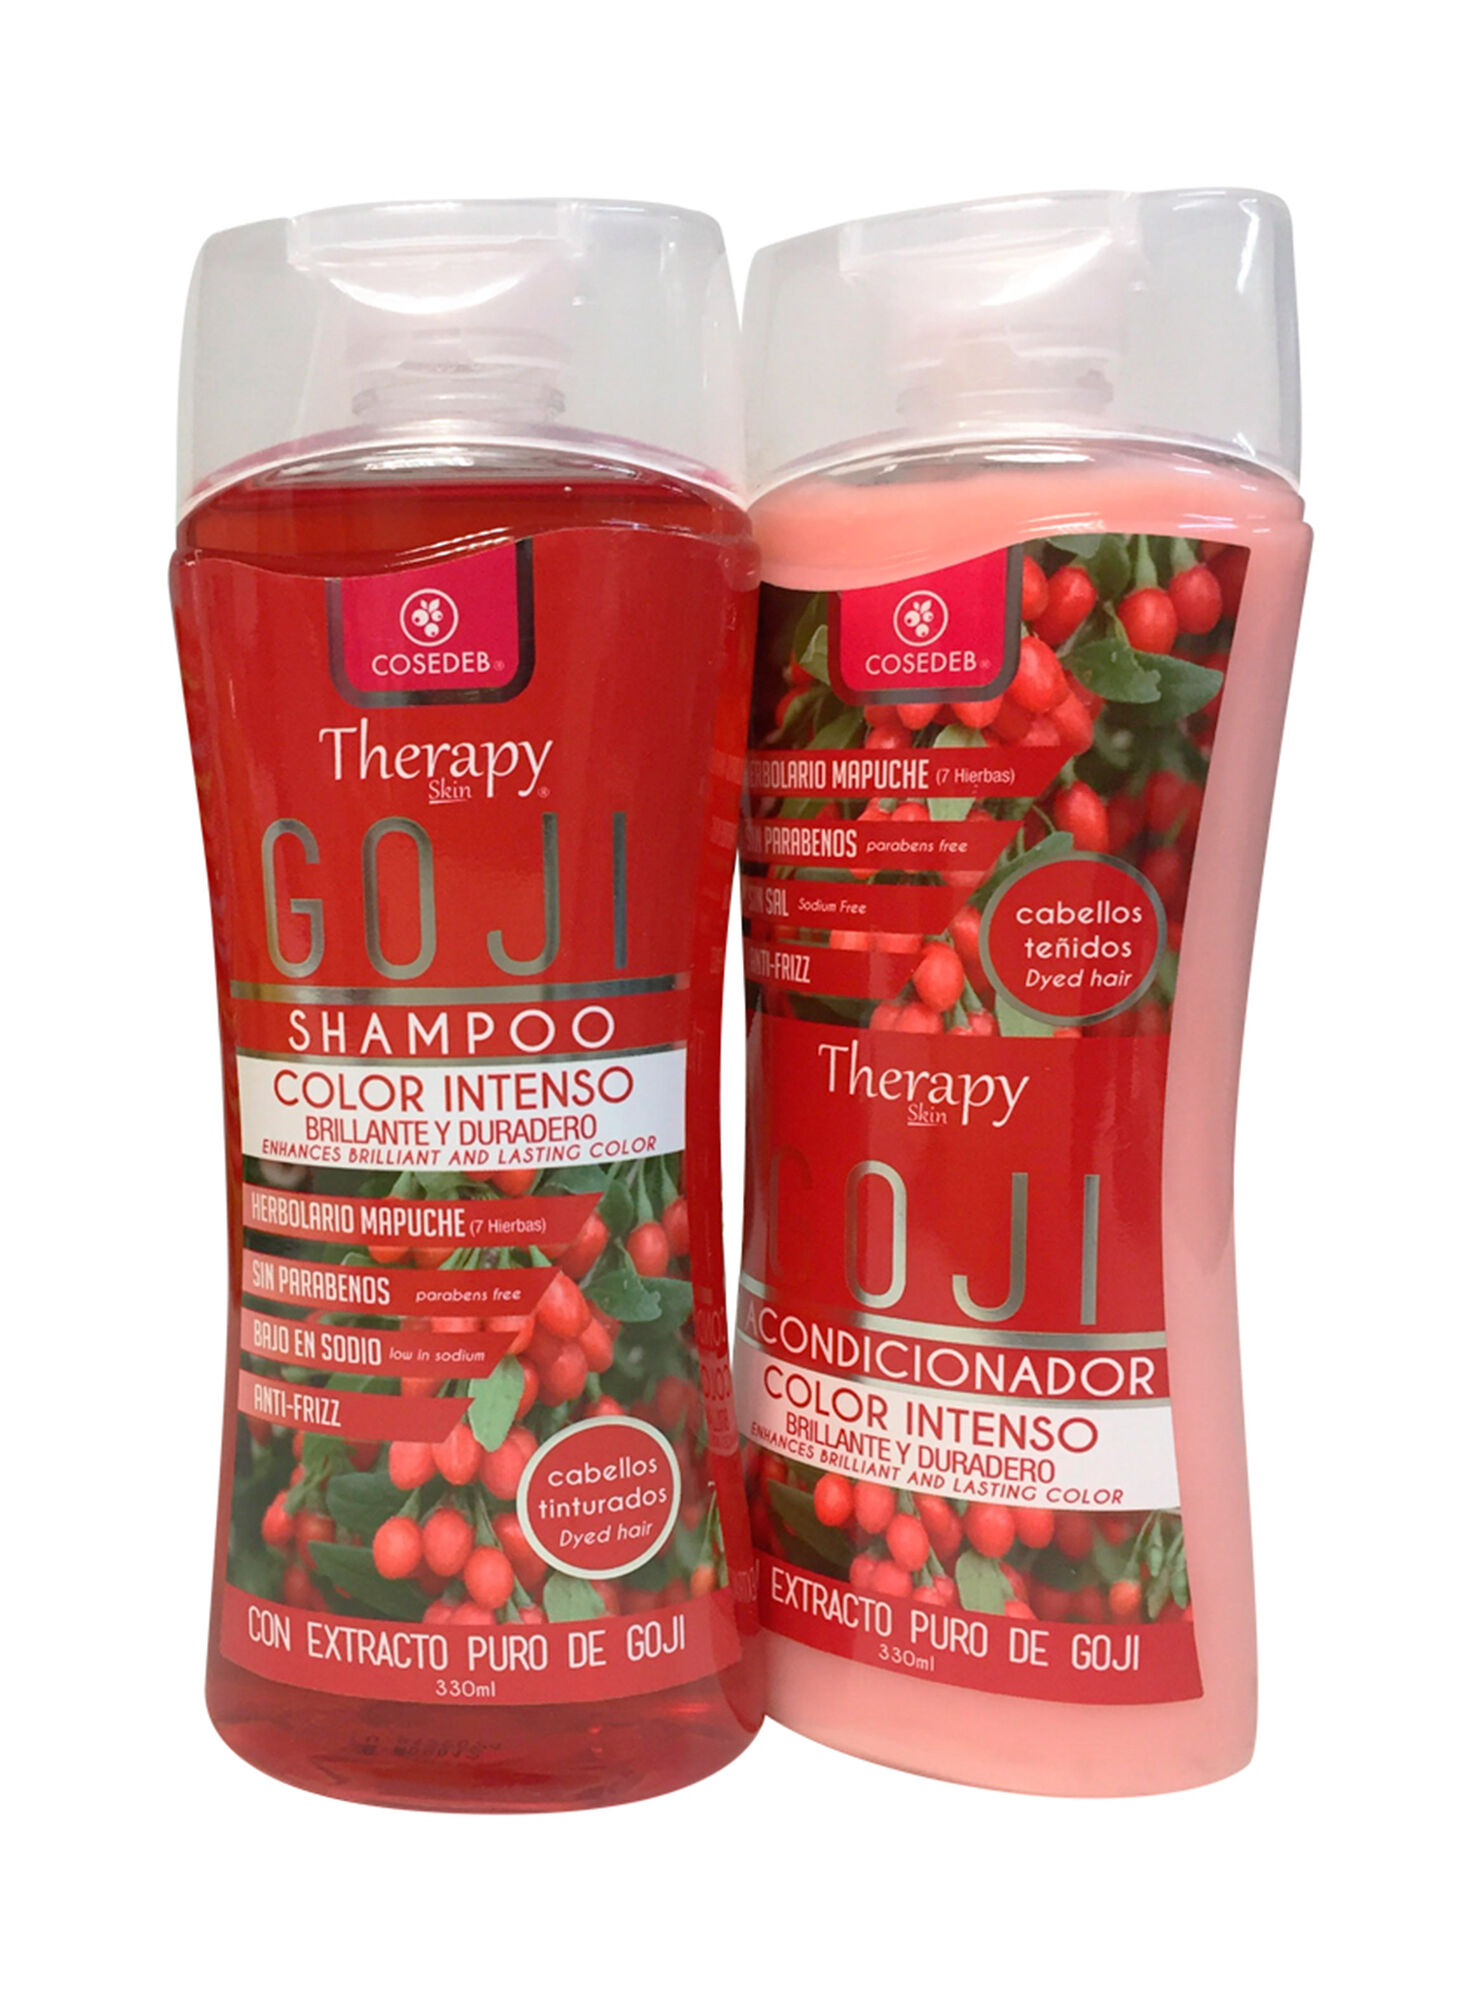 Pack Cosedeb Therapy Skin Shampoo y Acondicionador Goji color intenso -  Sets de Tratamiento | Paris.cl